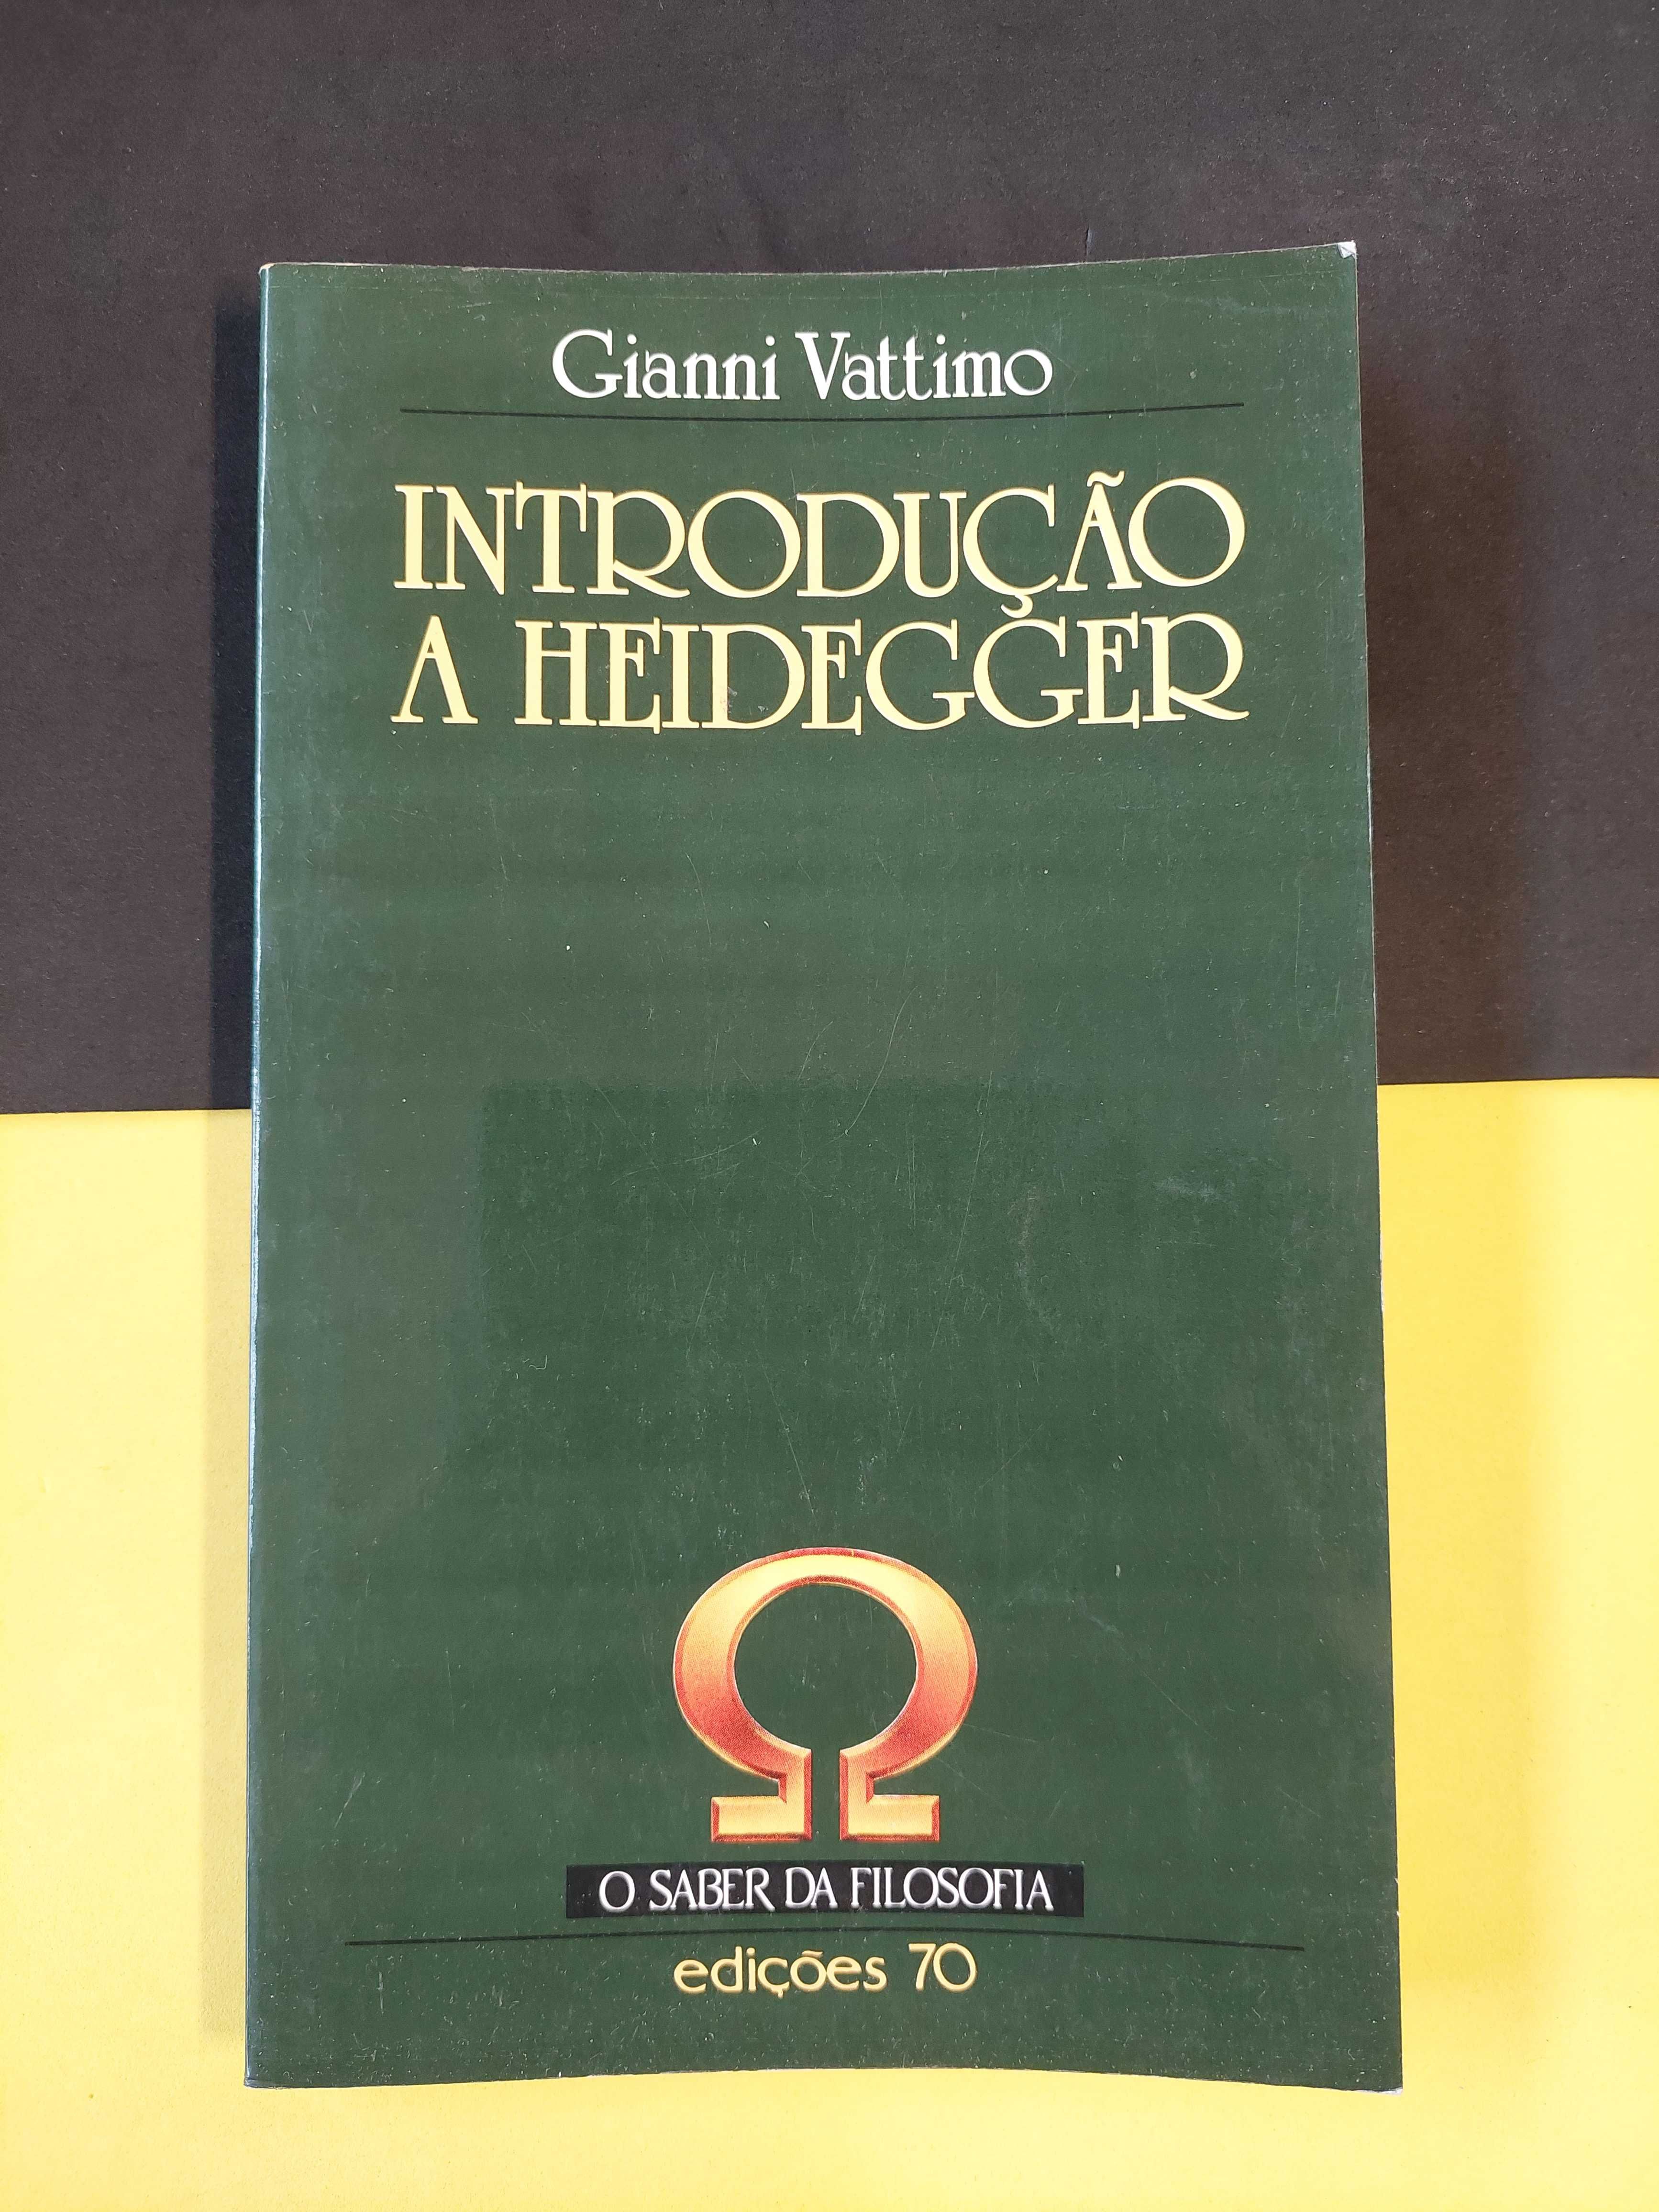 Gianni Vatimo - Introdução a Heidegger